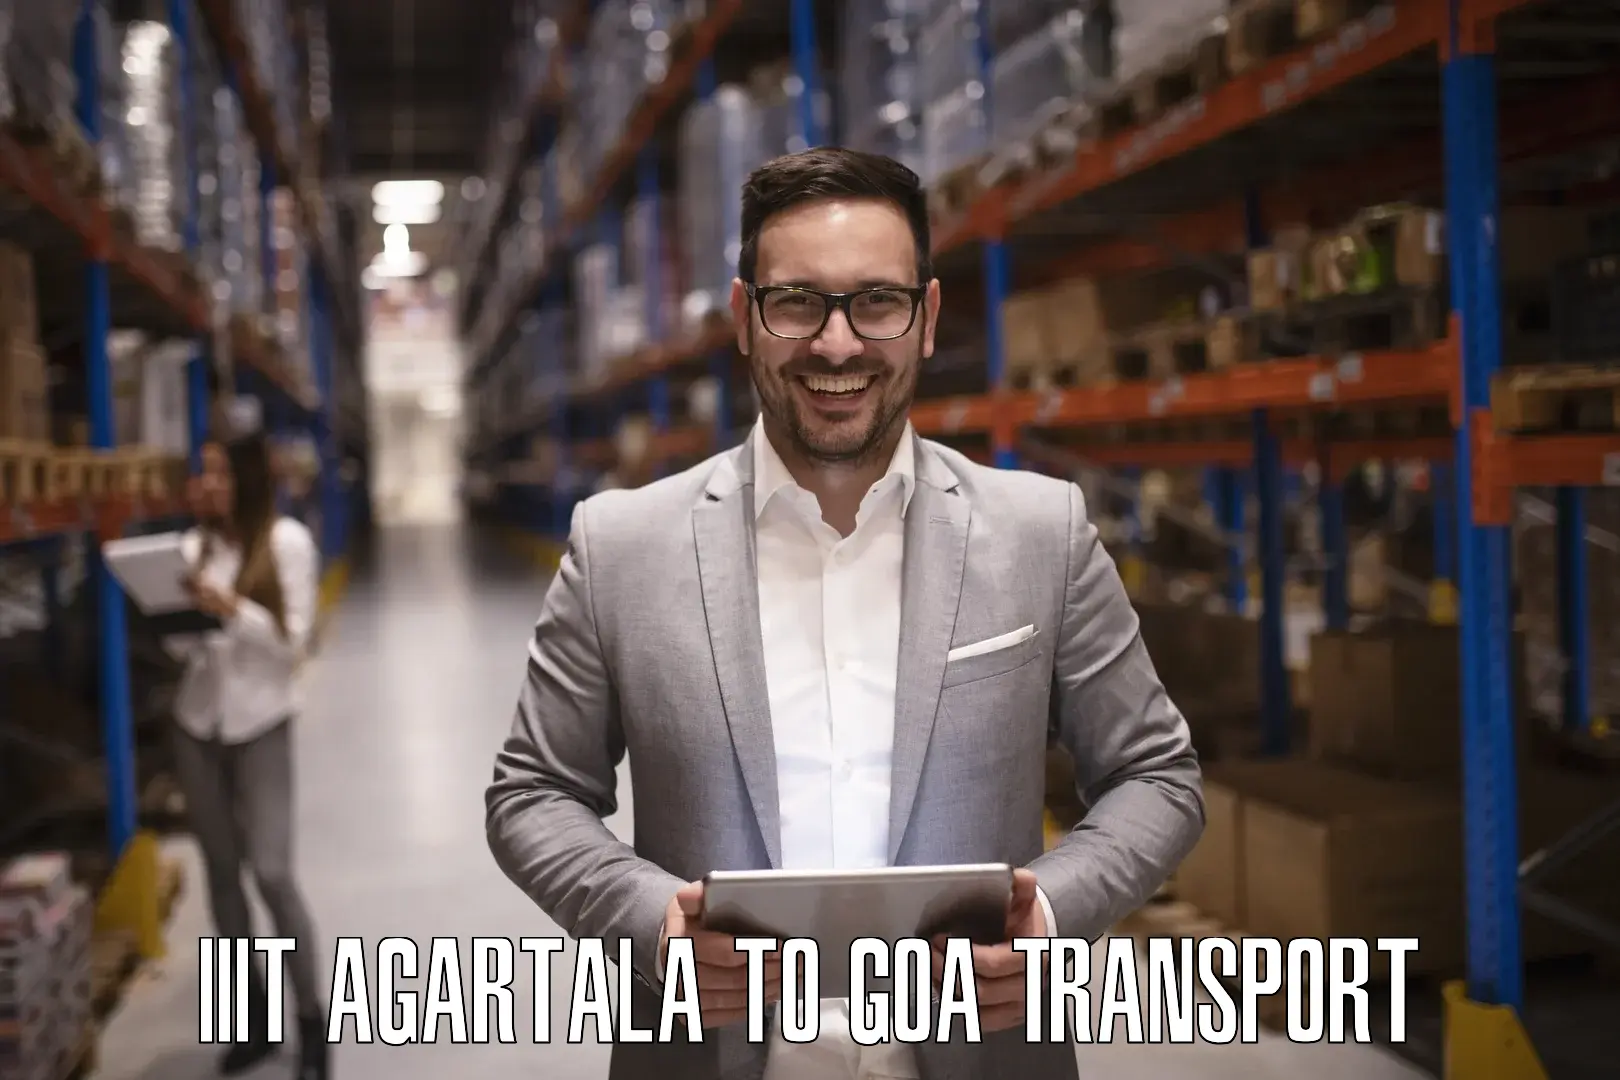 Furniture transport service IIIT Agartala to IIT Goa